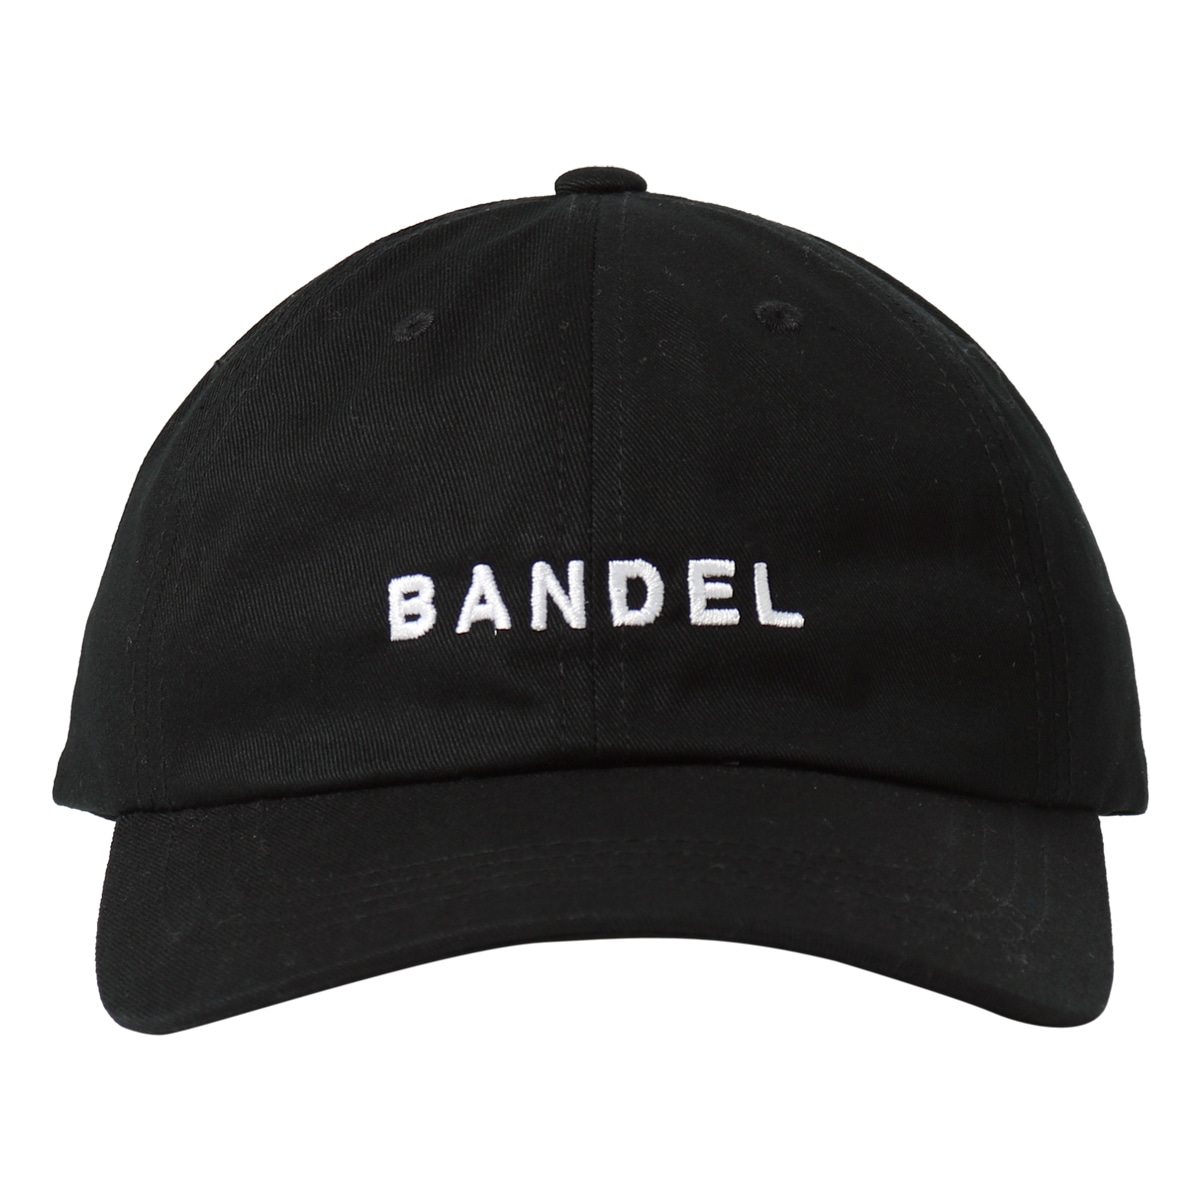 バンデル ゴルフ キャップ 帽子 メンズ BAN-CP002 BANDEL | スポーツ アウトドア カーブバイザー Cap Low